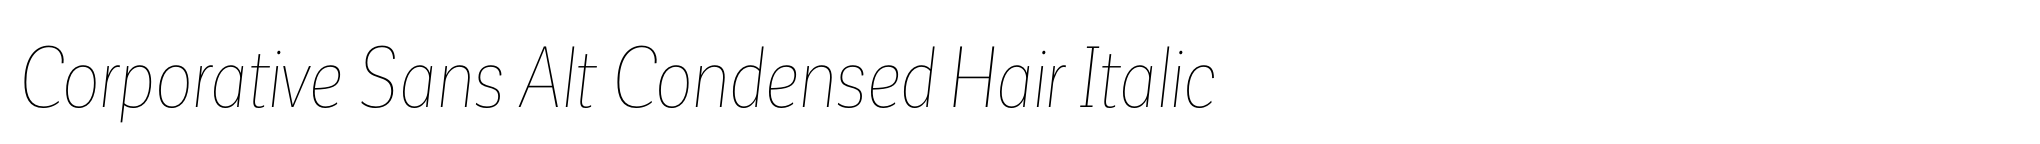 Corporative Sans Alt Condensed Hair Italic image